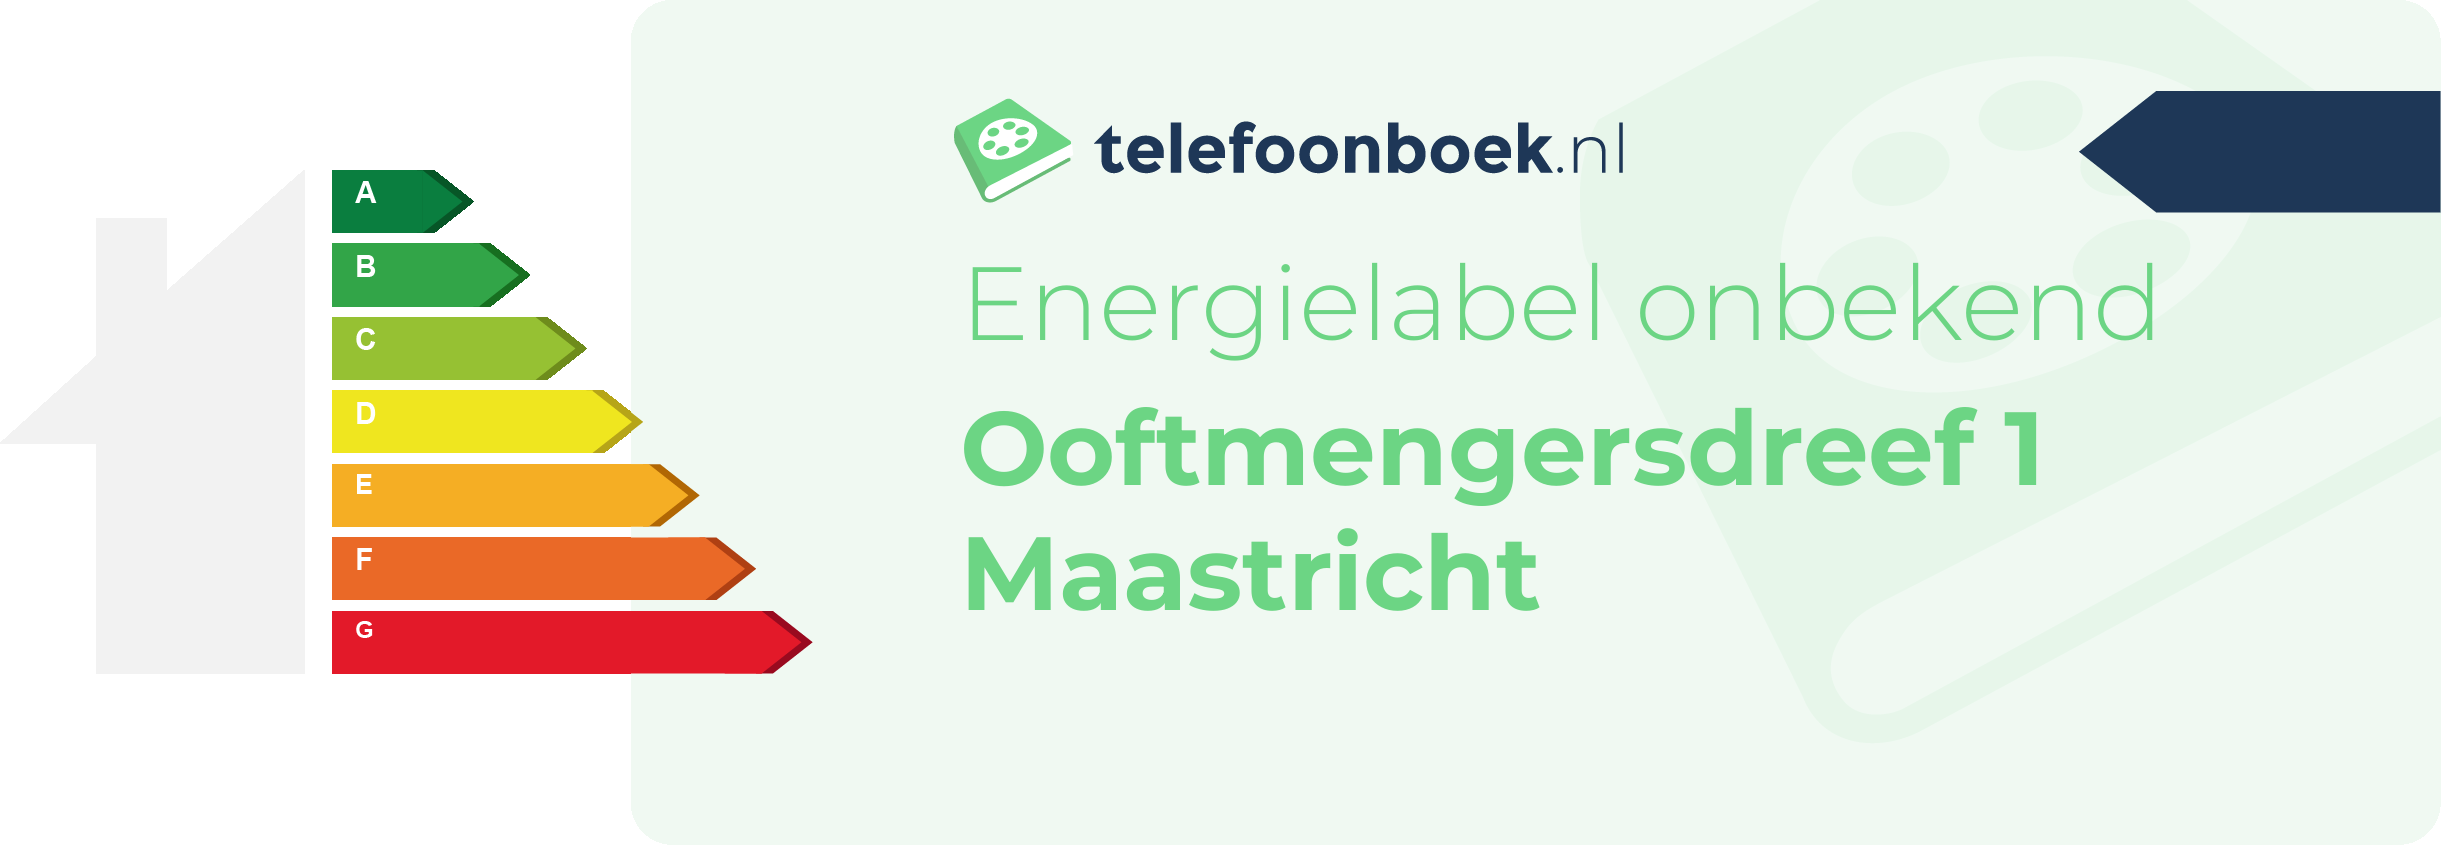 Energielabel Ooftmengersdreef 1 Maastricht